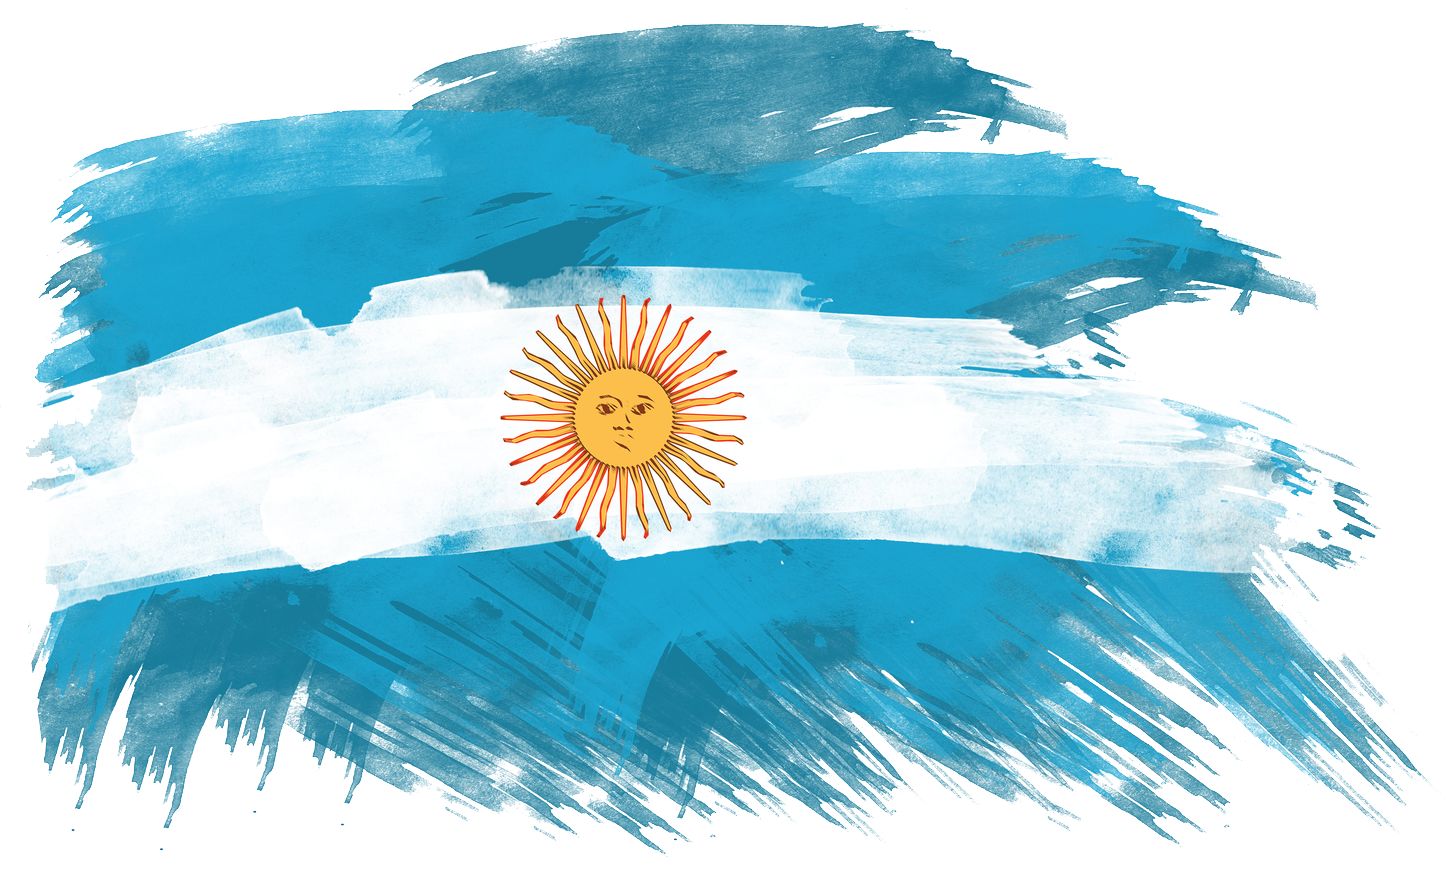 bandera argentina sin sol - Buscar con Google | Argentina ...